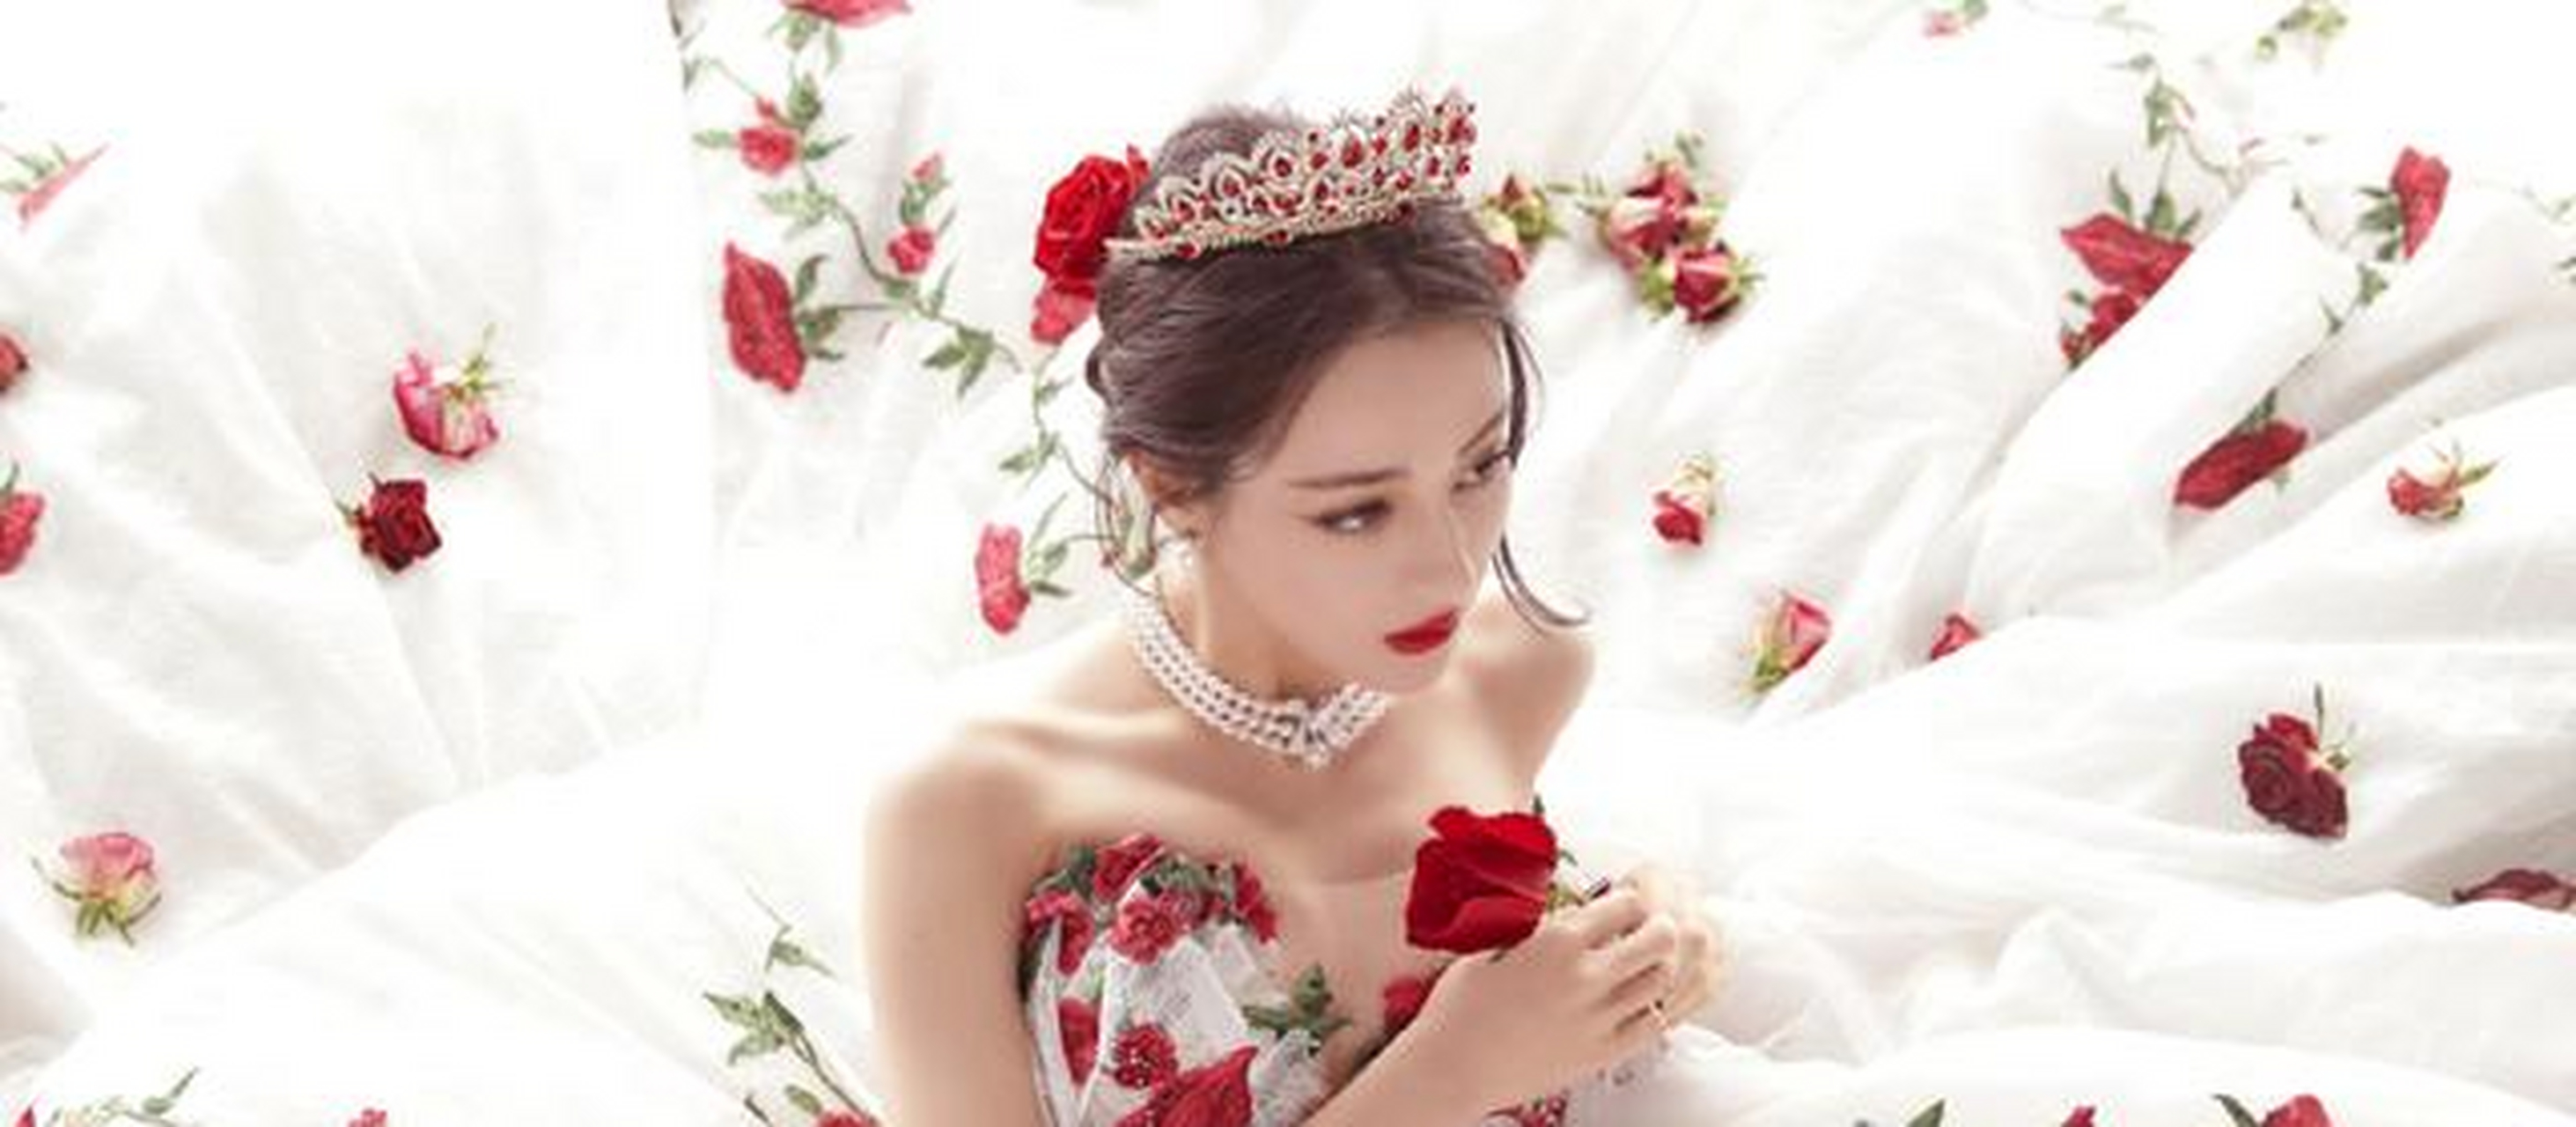 迪丽热巴超美白纱裙红玫瑰梦幻写真,网友惊呼:这也太美了[摸头]